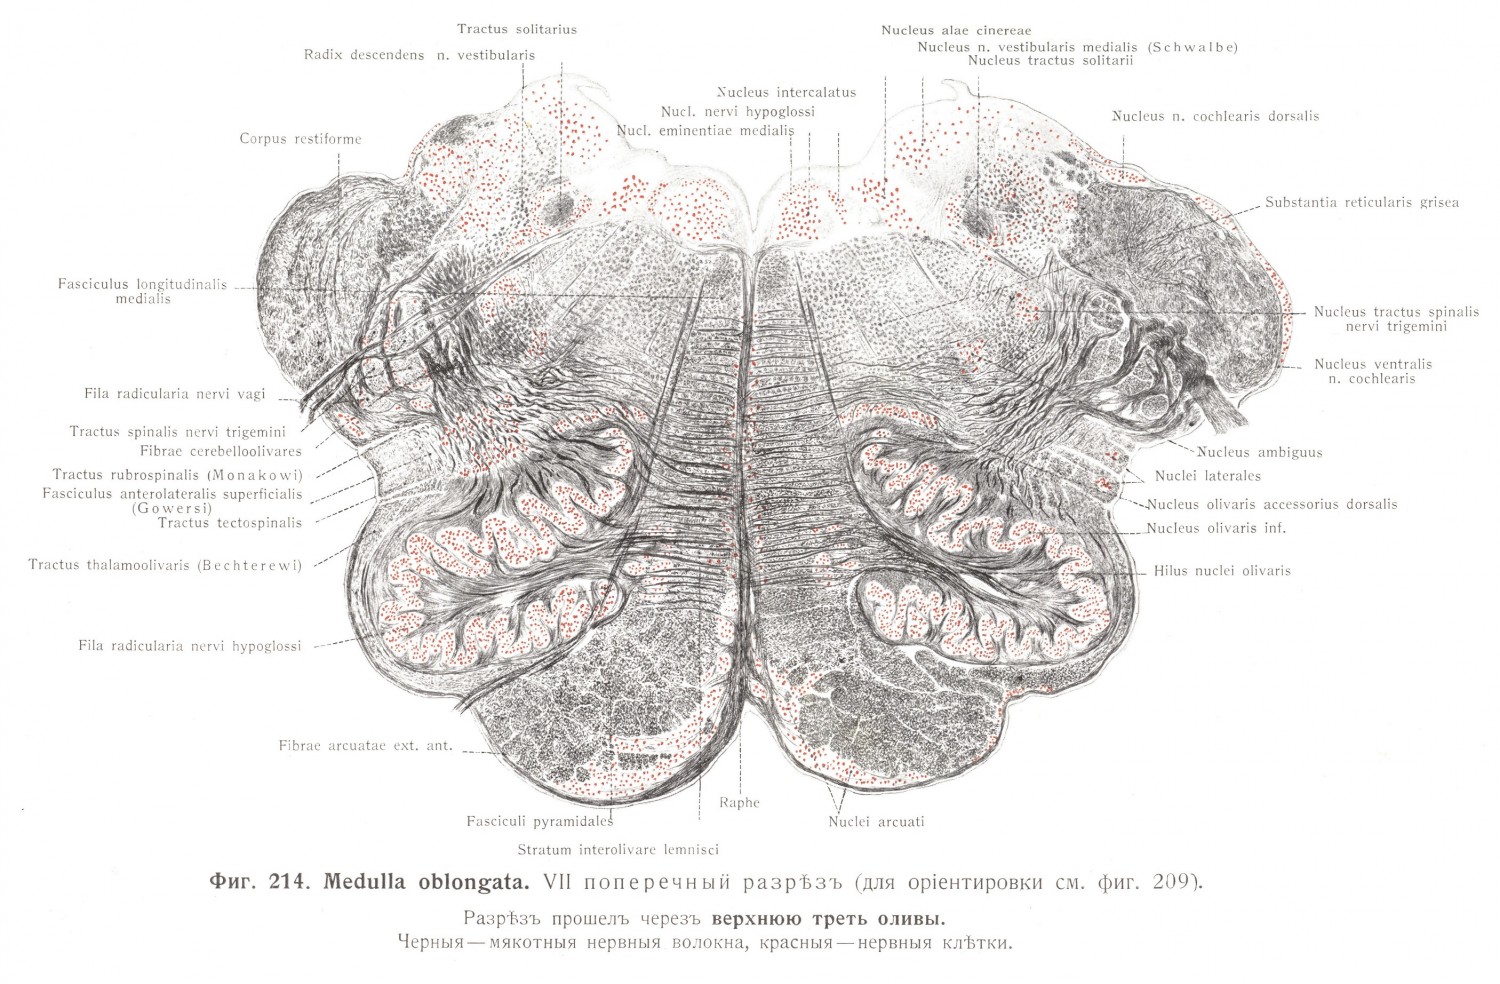 Medulla oblongata, VII поперечный разрез